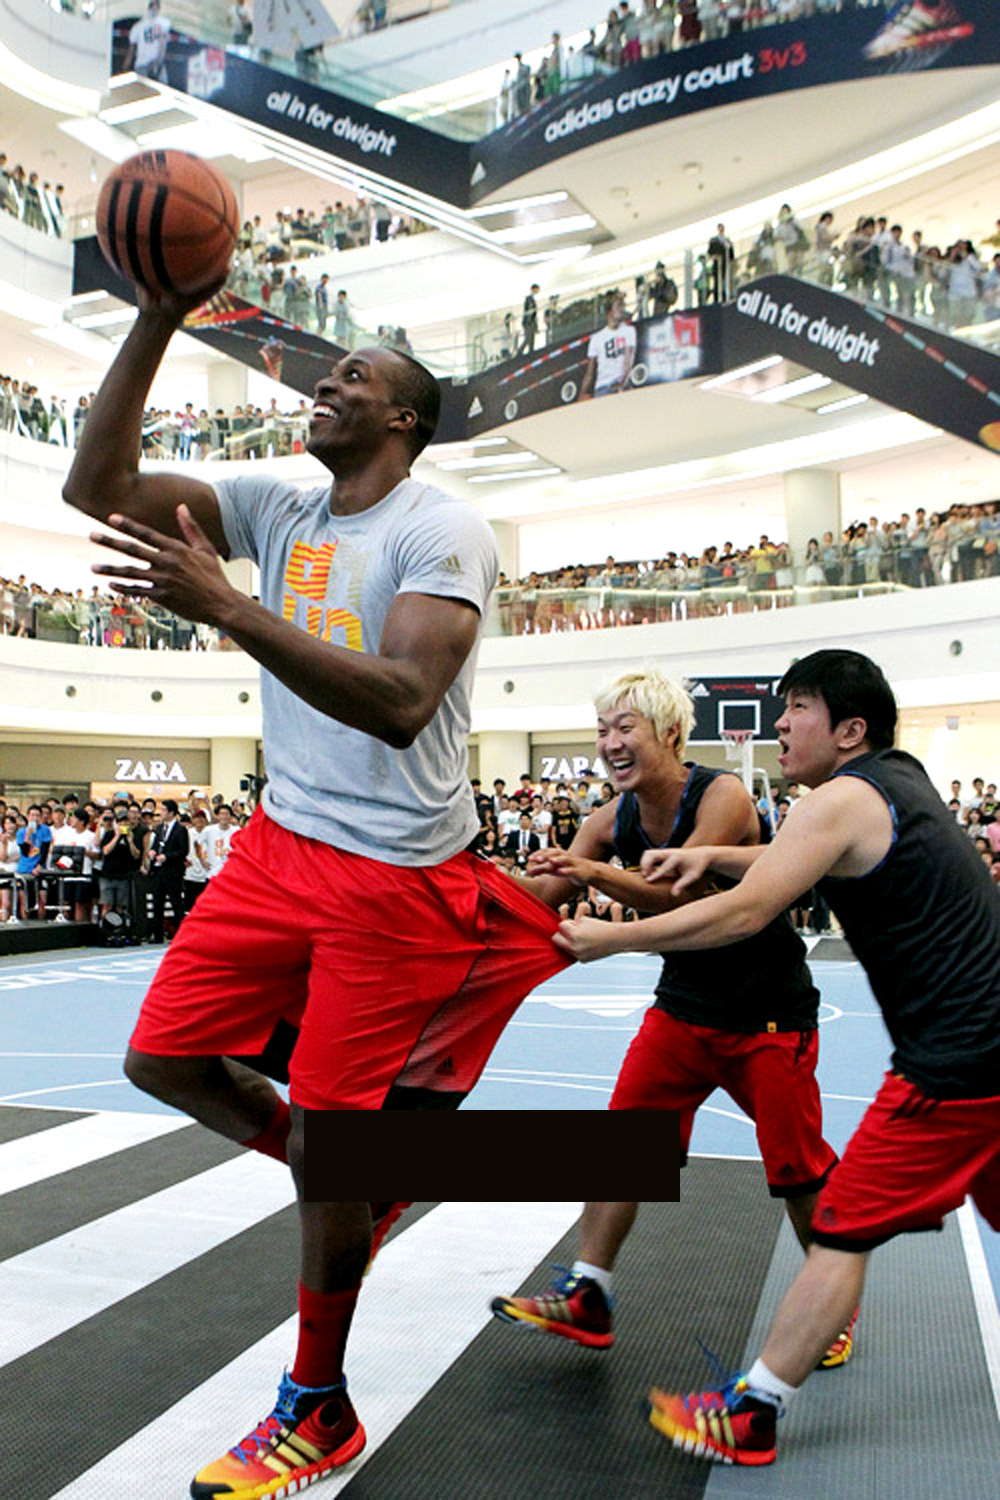 Dwight Howord adidas basketball HAHA jung hyung don houston rokets NBA Collaboration atmosphere